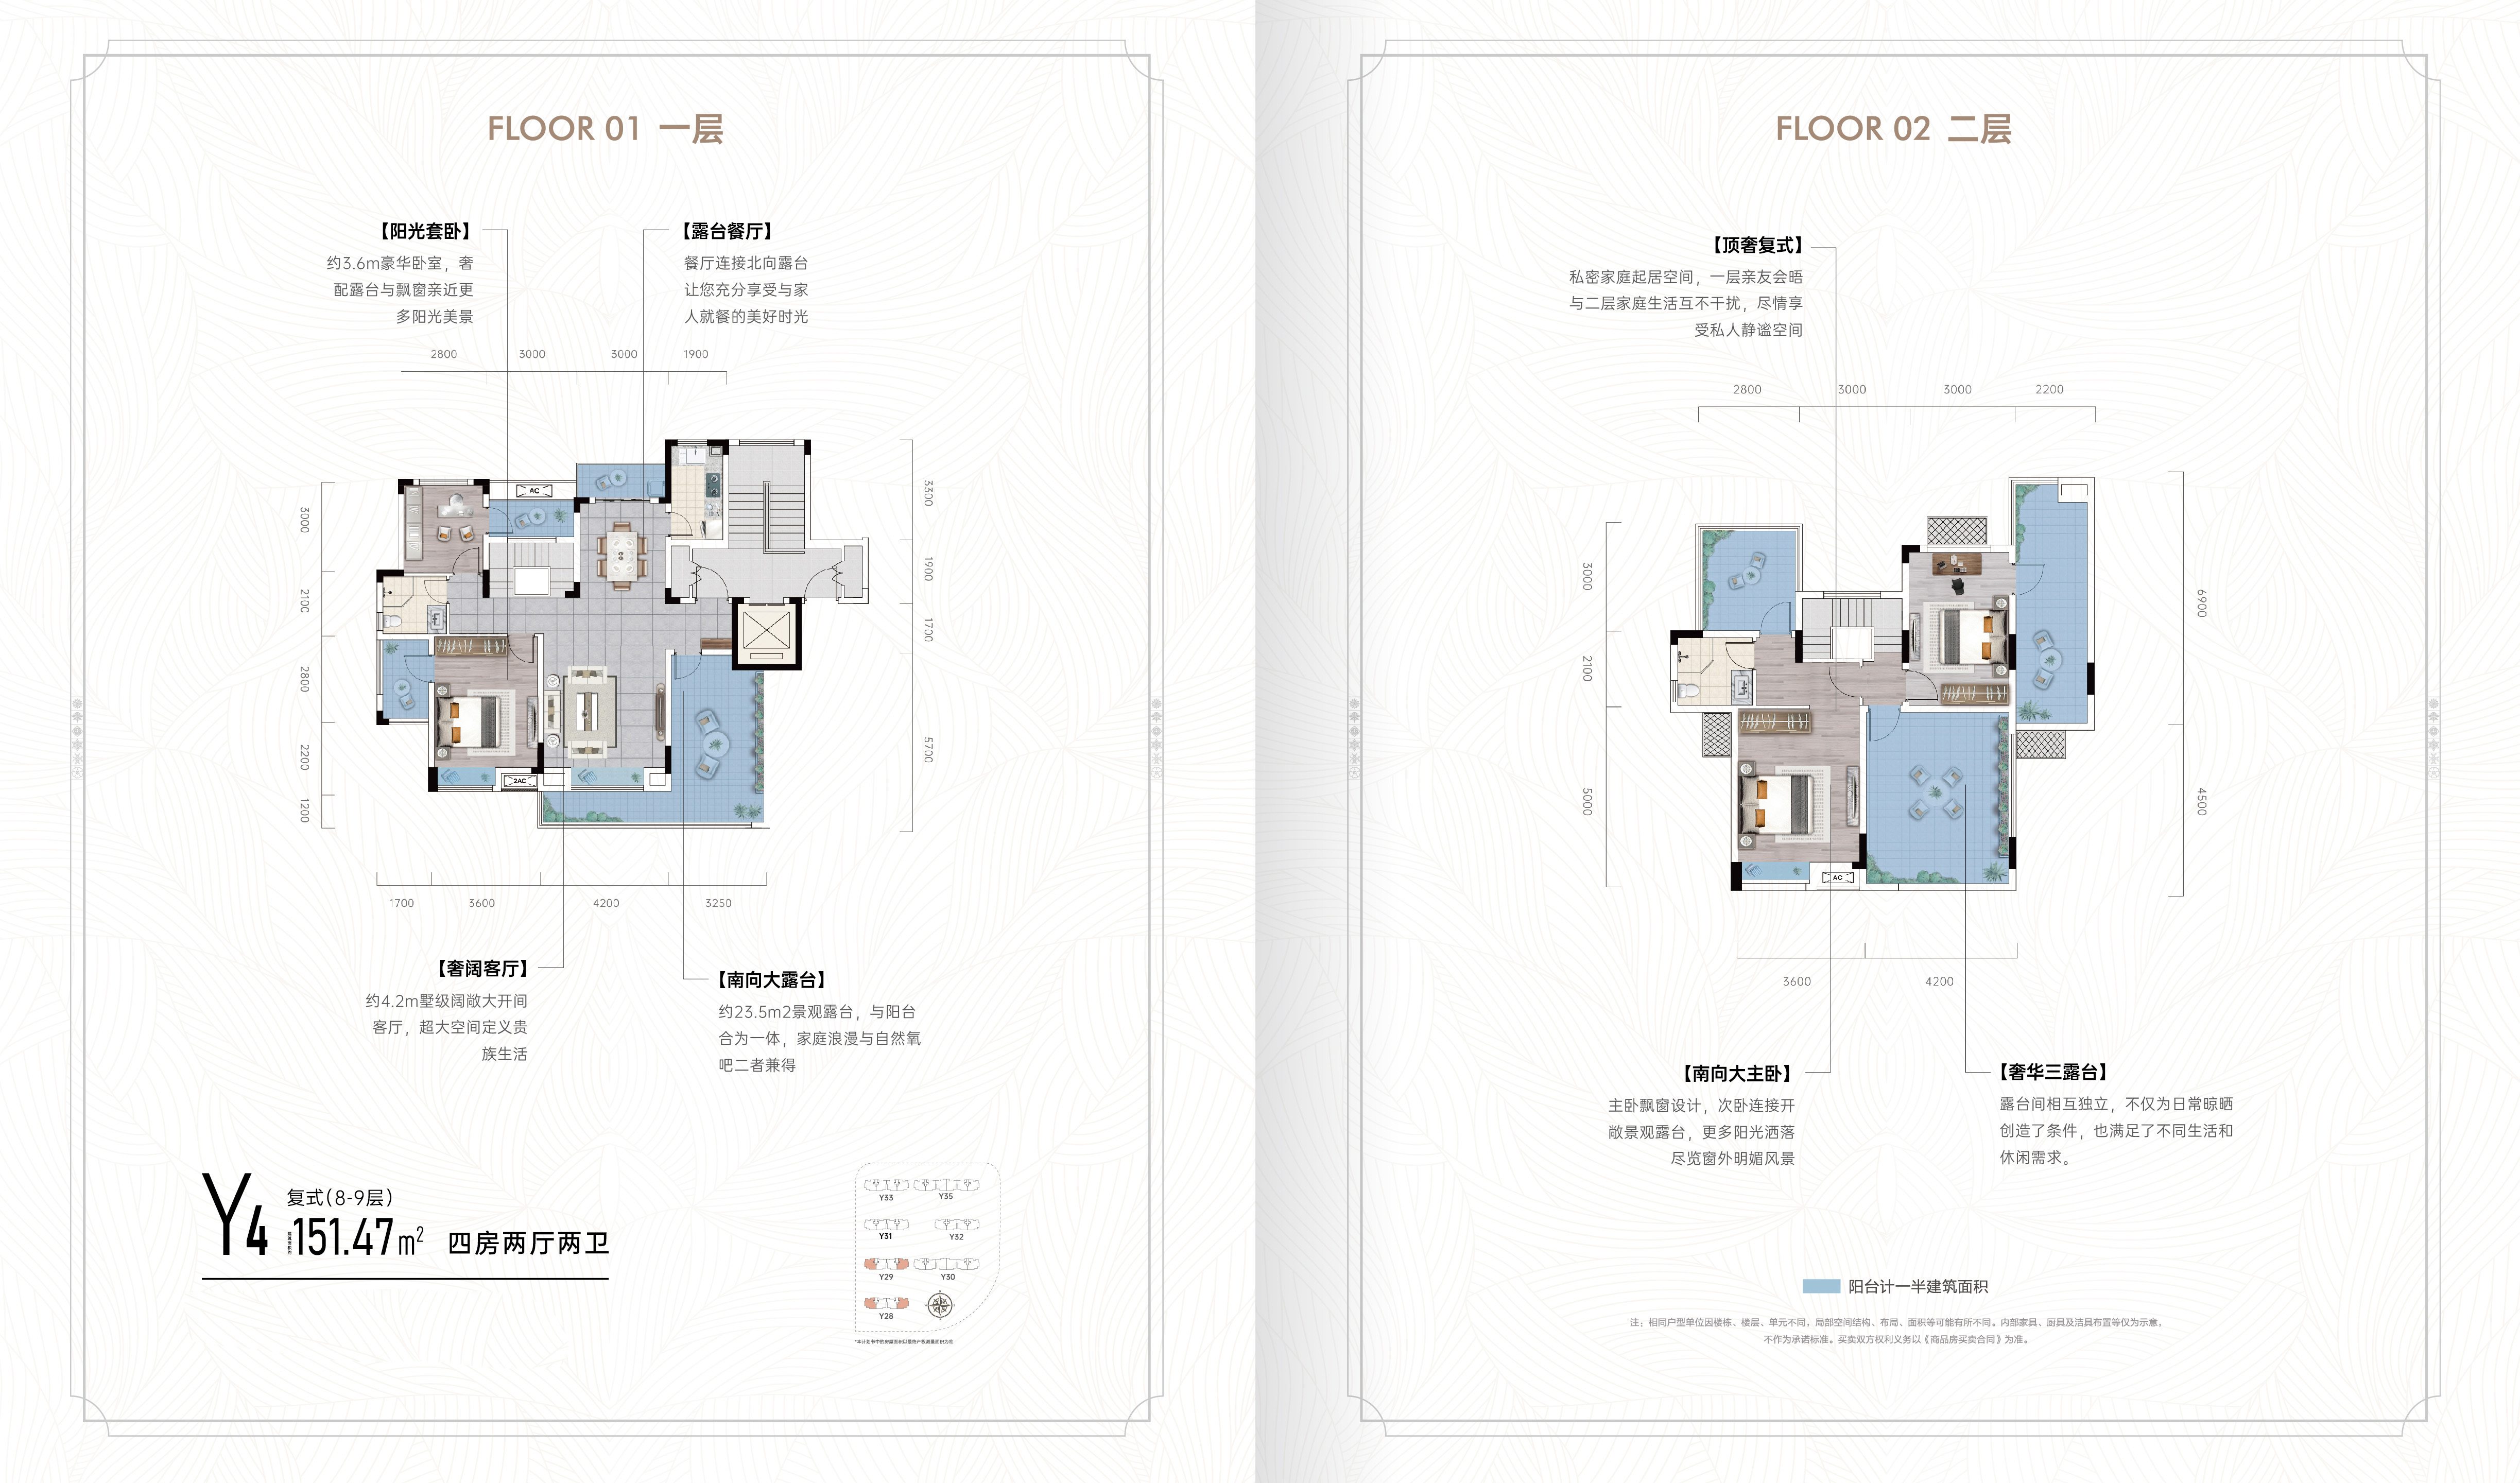  4室户型：四室两厅两卫 面积：面积151.47㎡ 